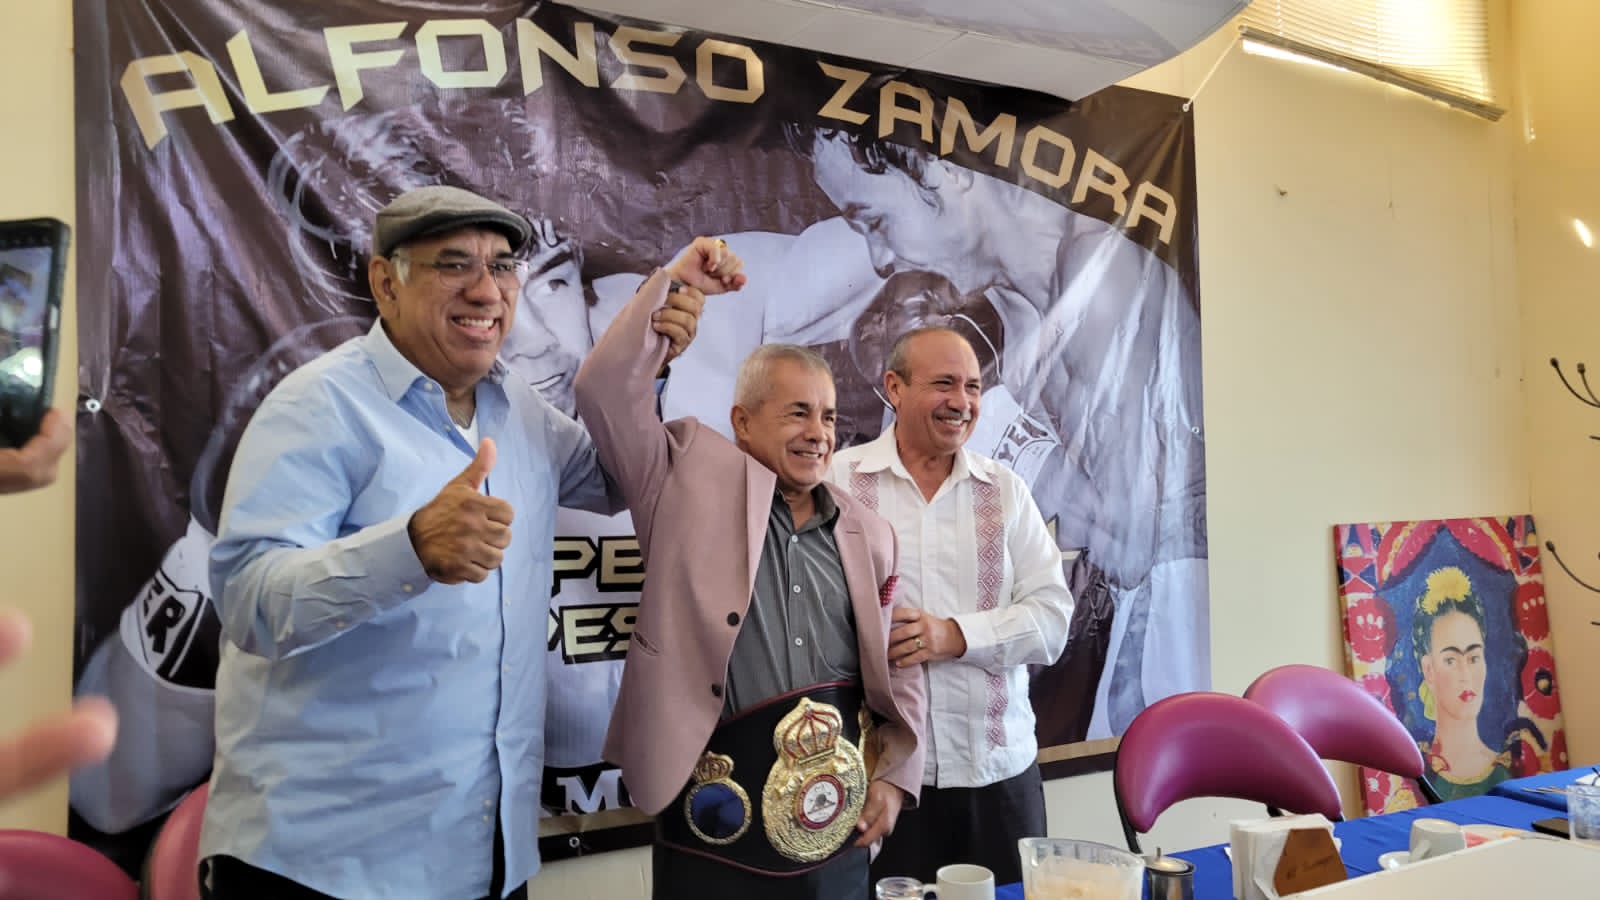 WBA condecoró a Alfonso Zamora en México 